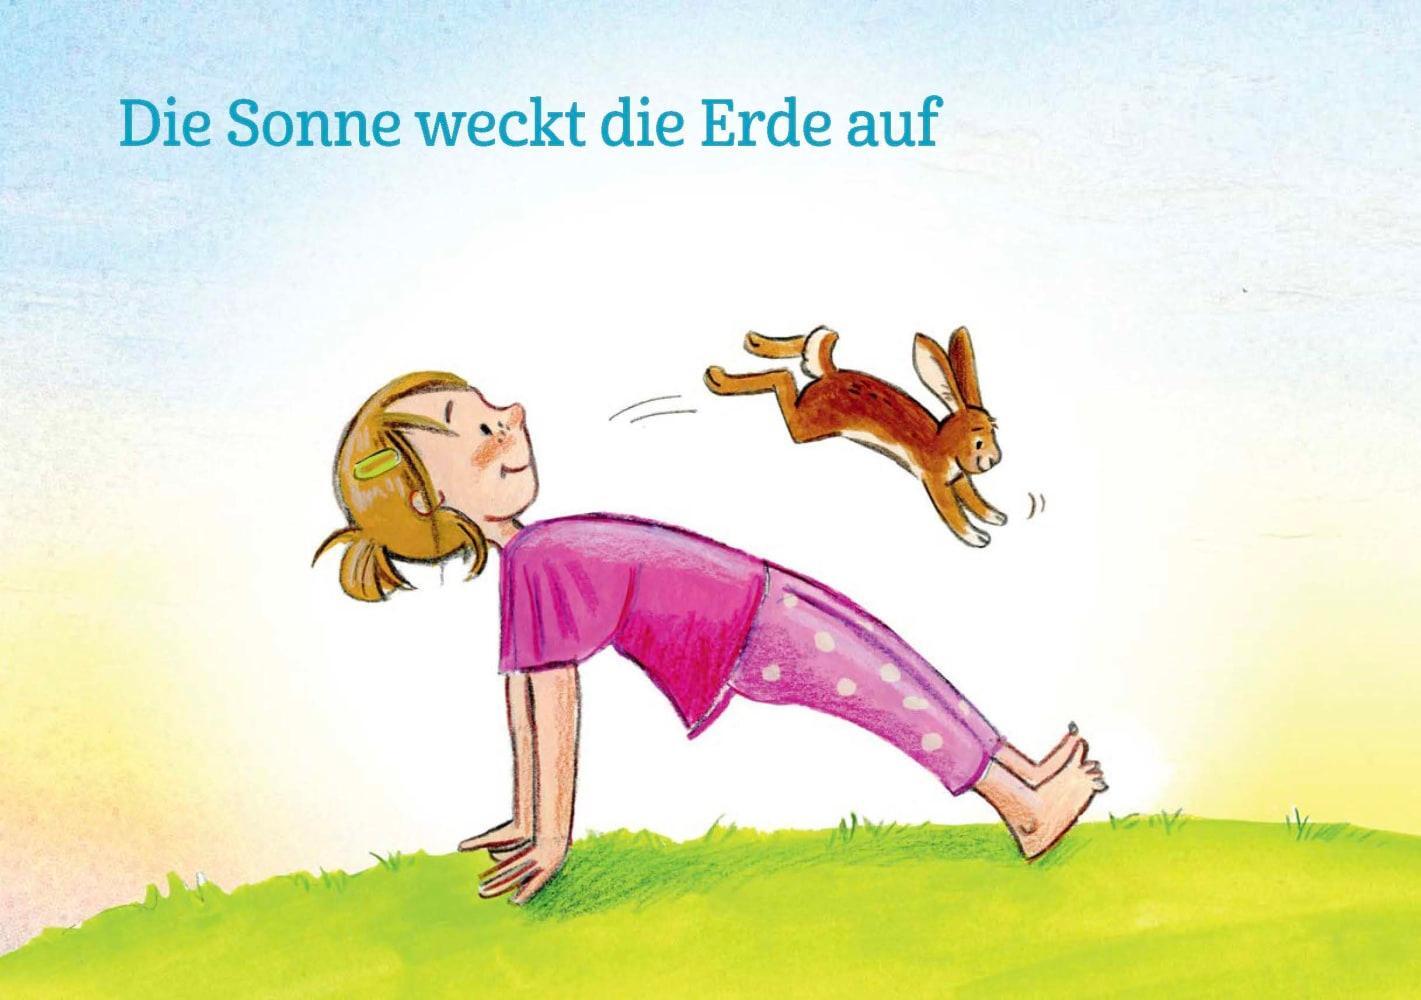 Bild: 4260179517082 | Kinderyoga-Bildkarten für Frühling und Sommer | Elke Gulden (u. a.)